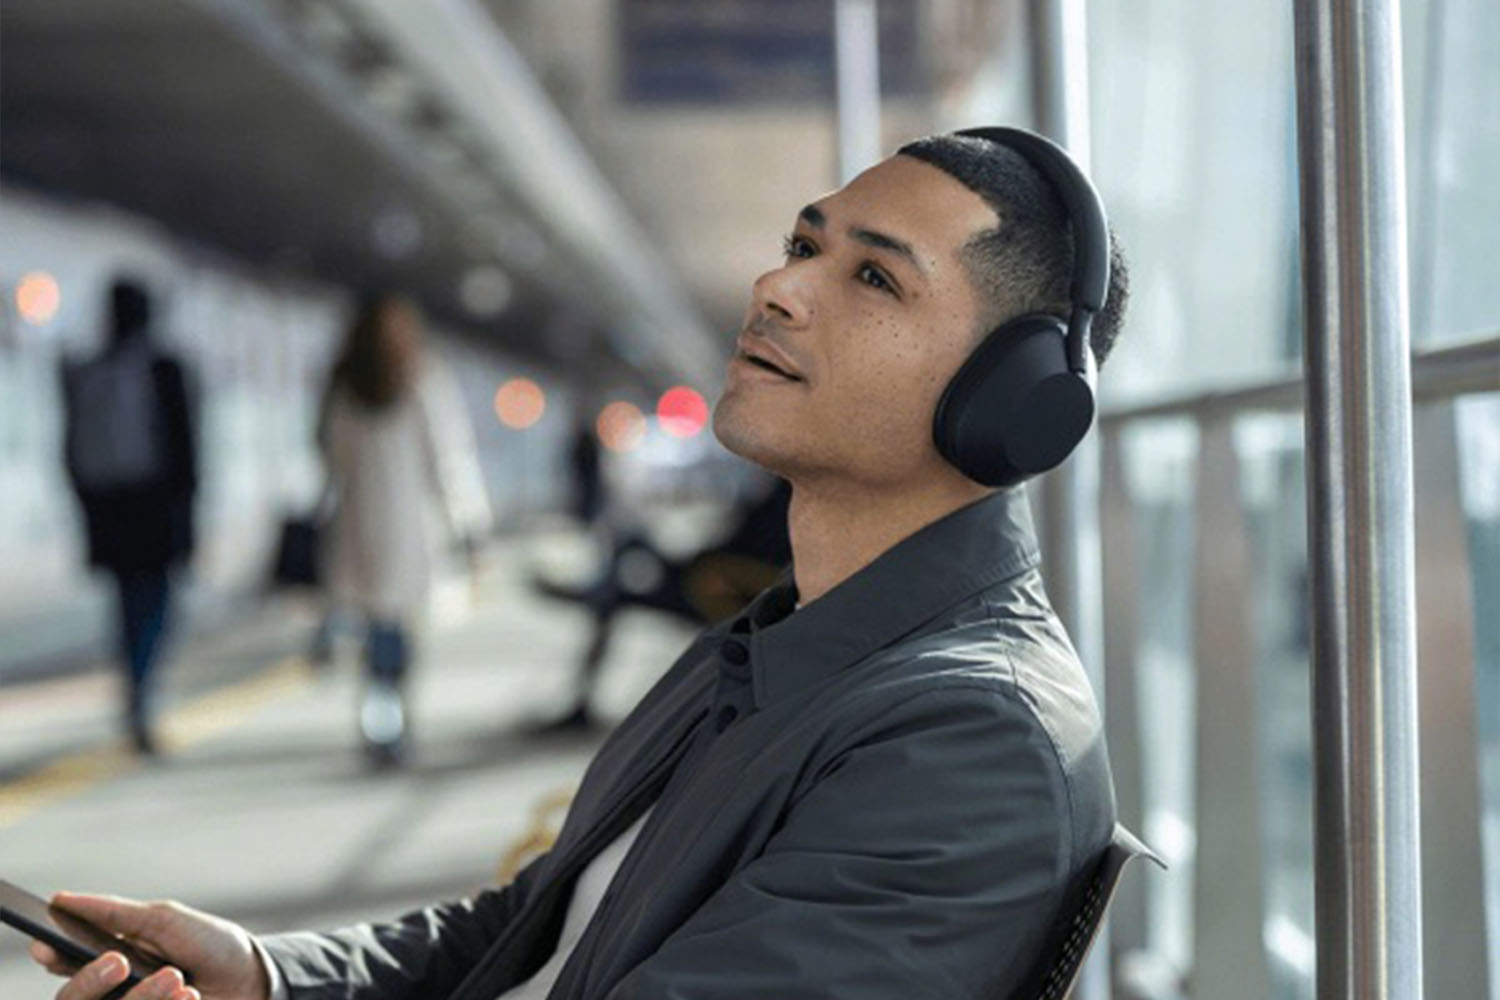 A model wearing Sony's new wireless headphones.